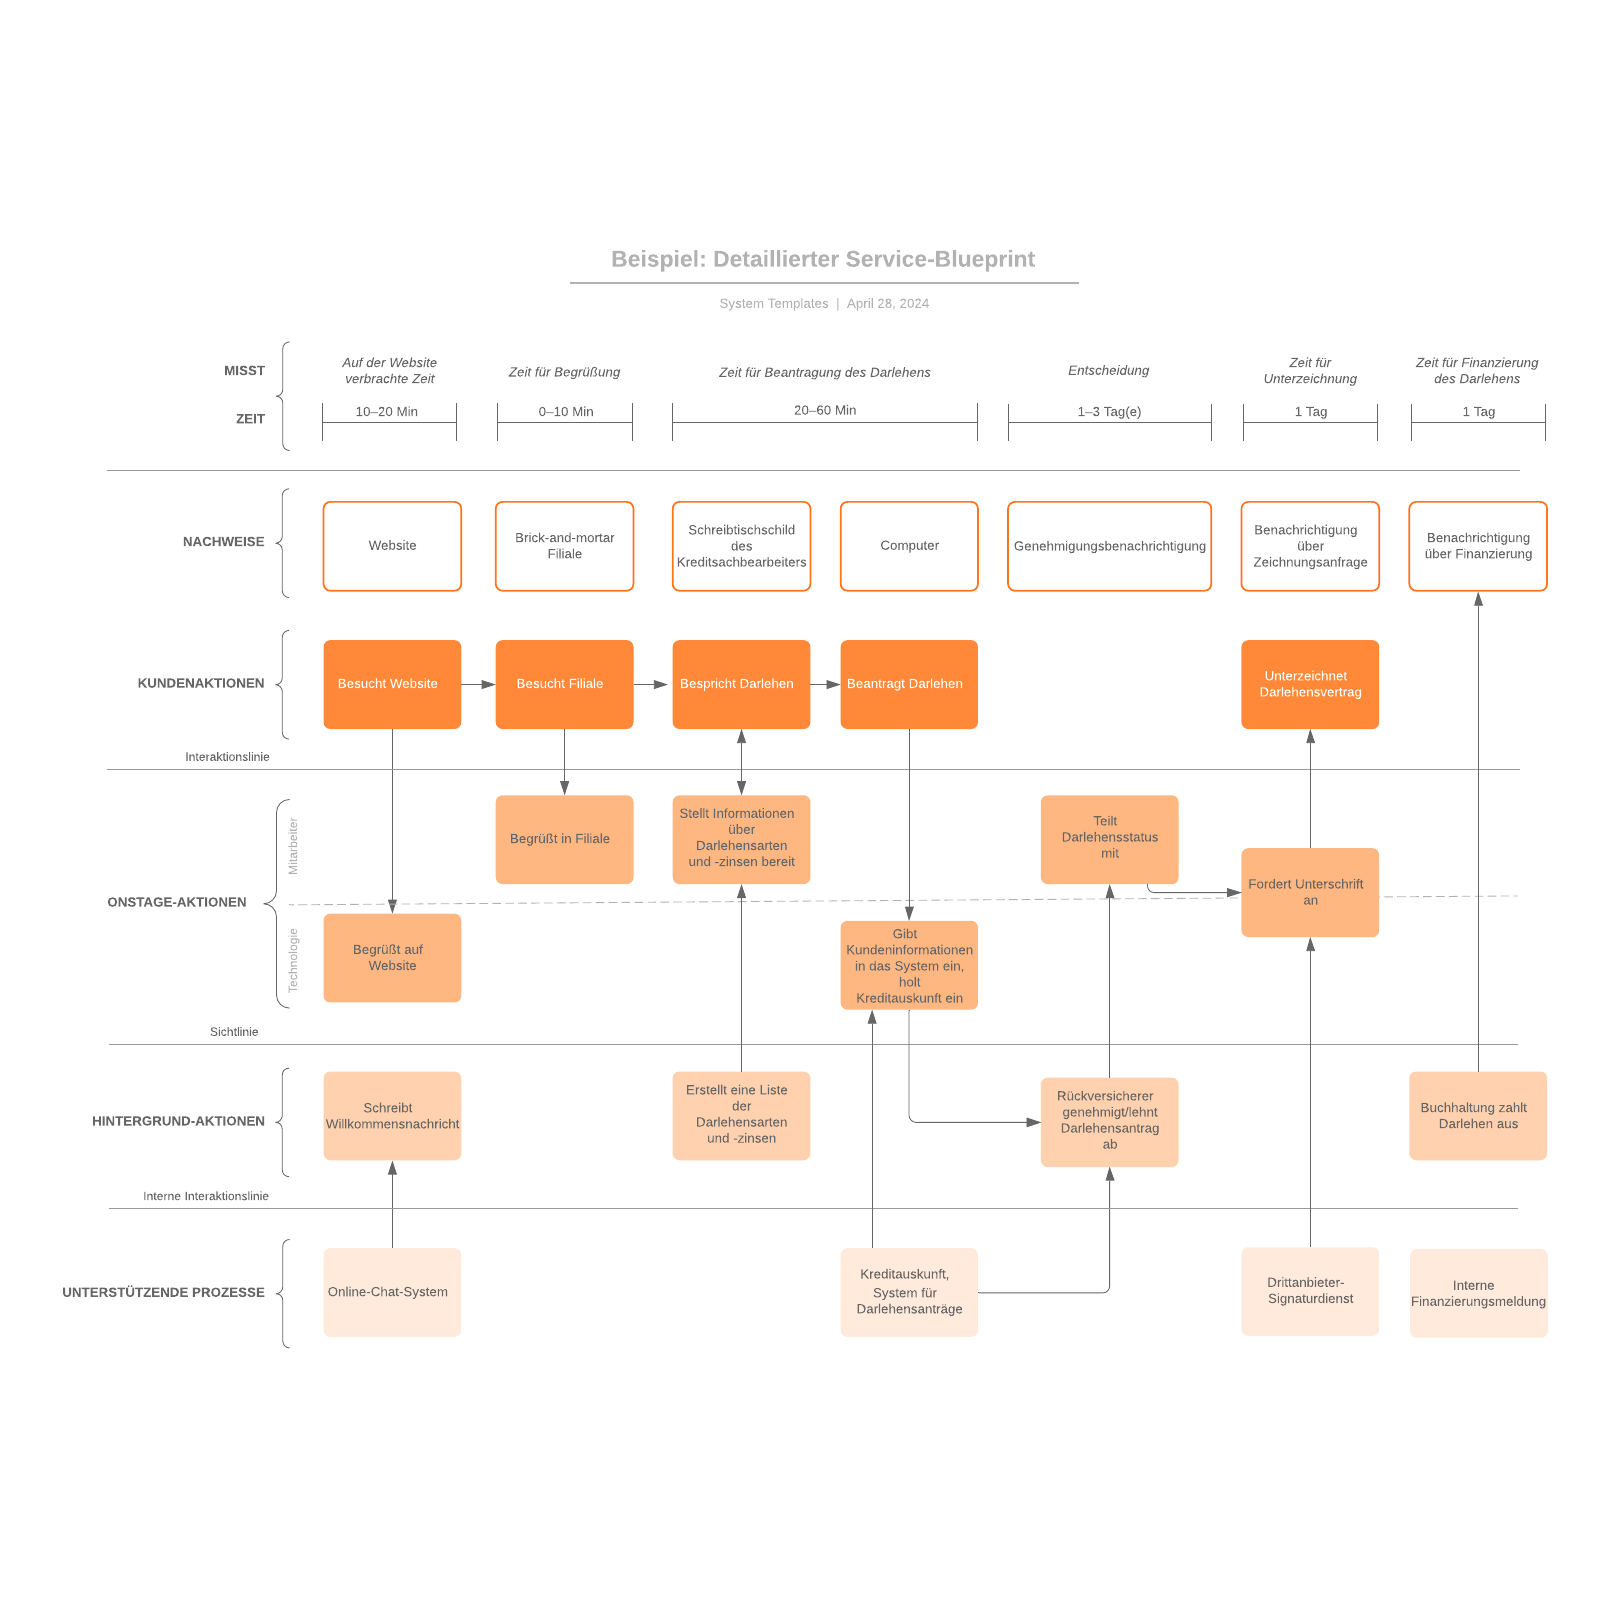 Detaillierter Service-Blueprint - Beispiel